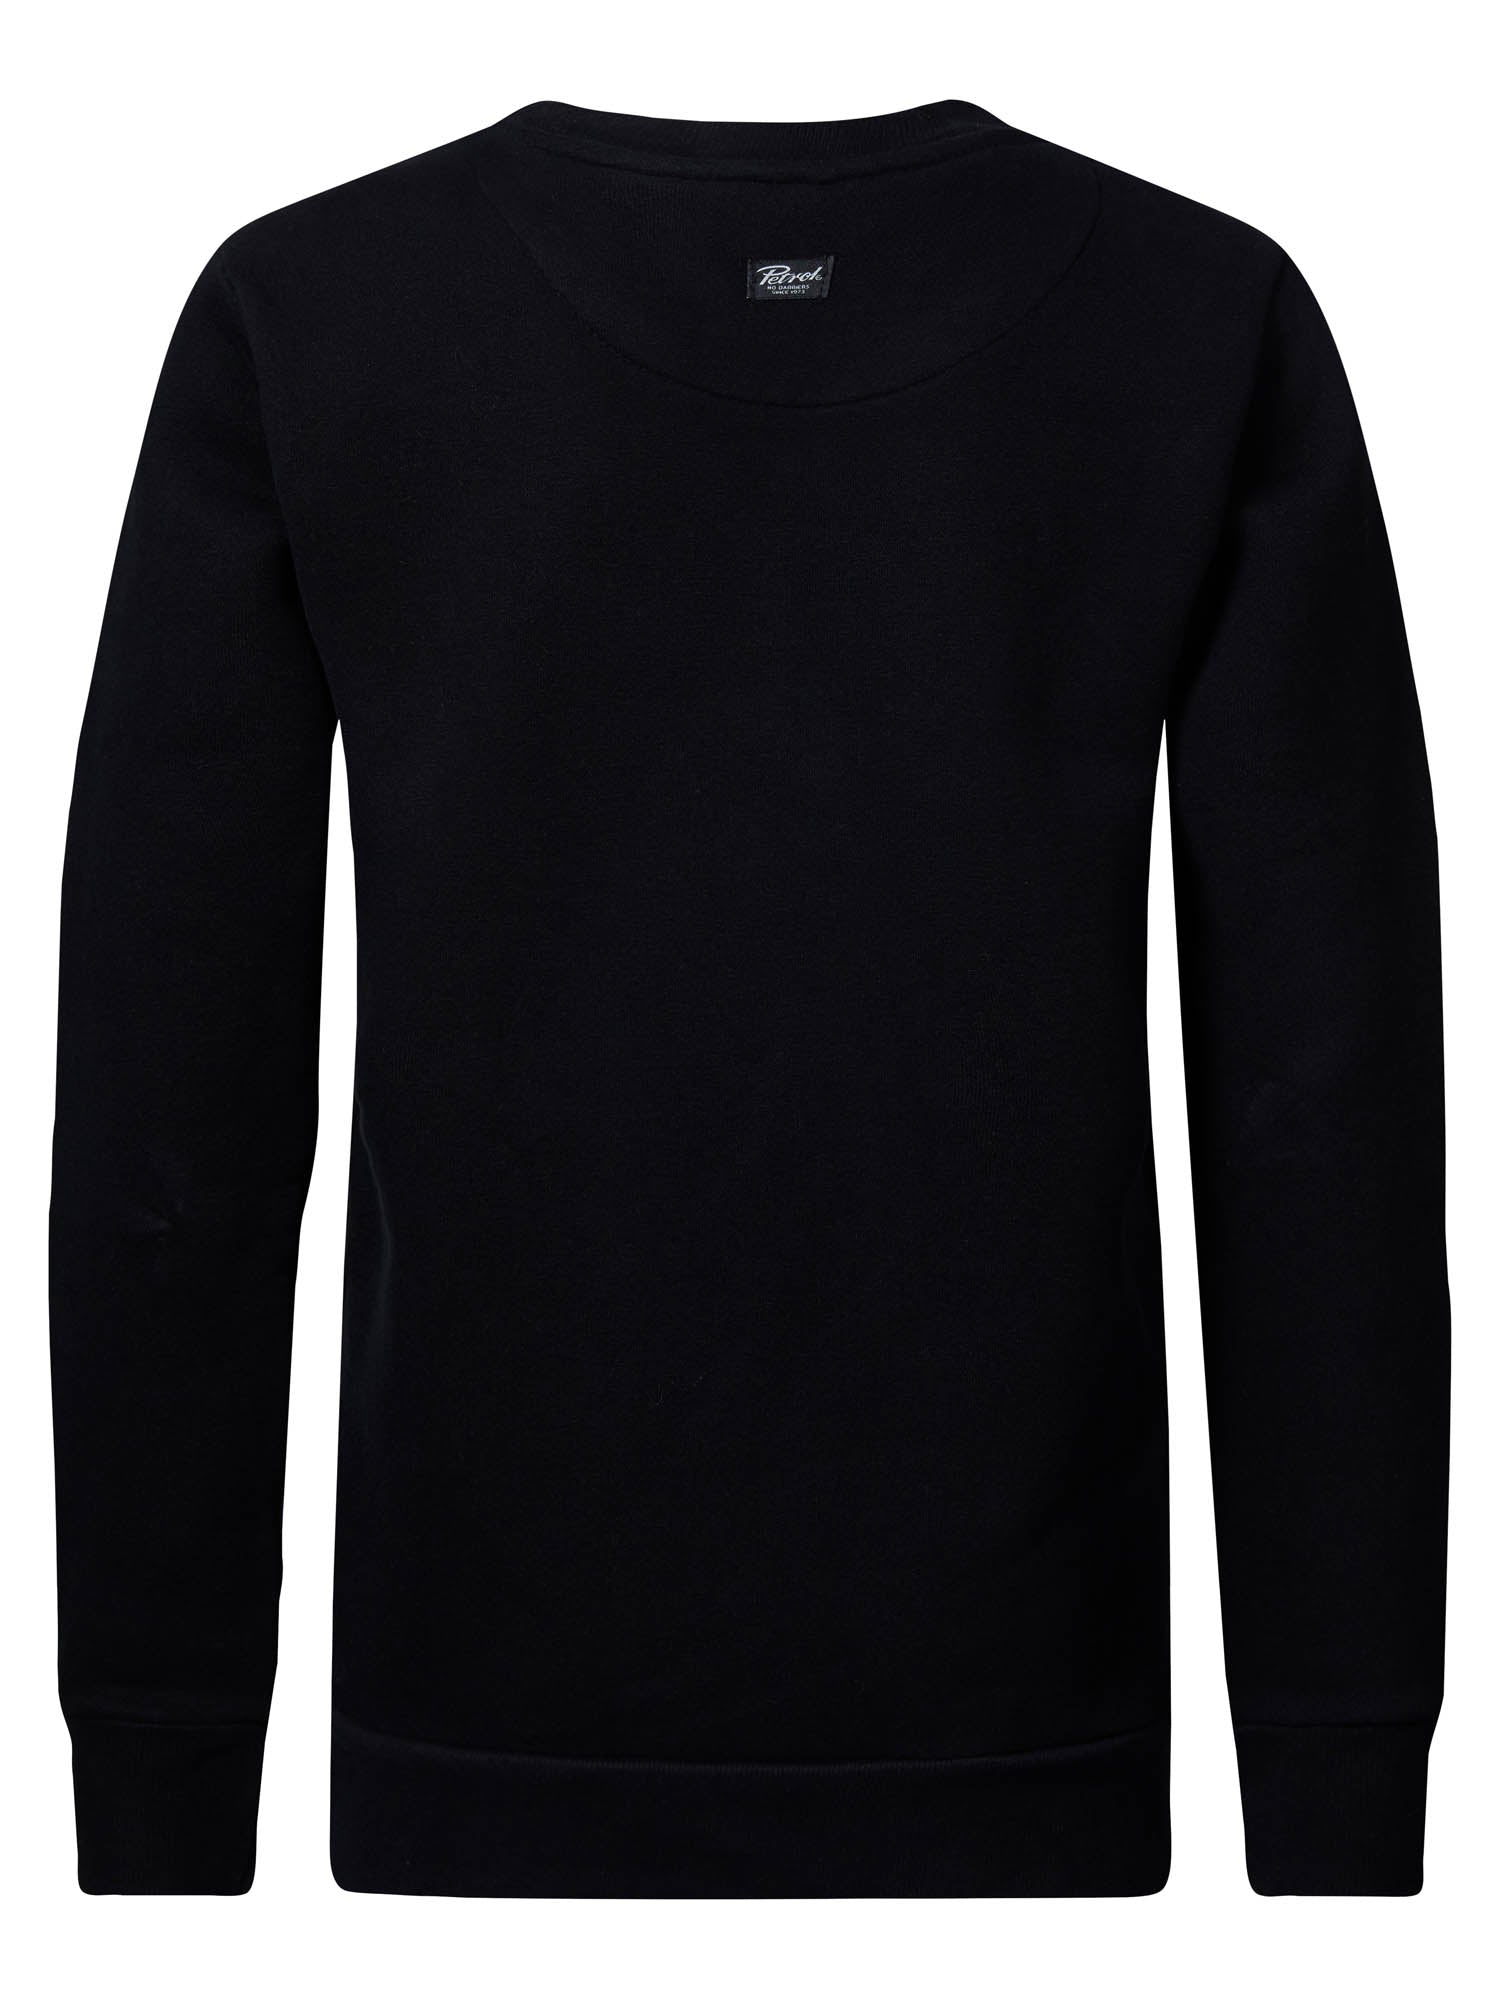 Jongens Boys Sweater Round Neck Print van Petrol in de kleur Black in maat 164.